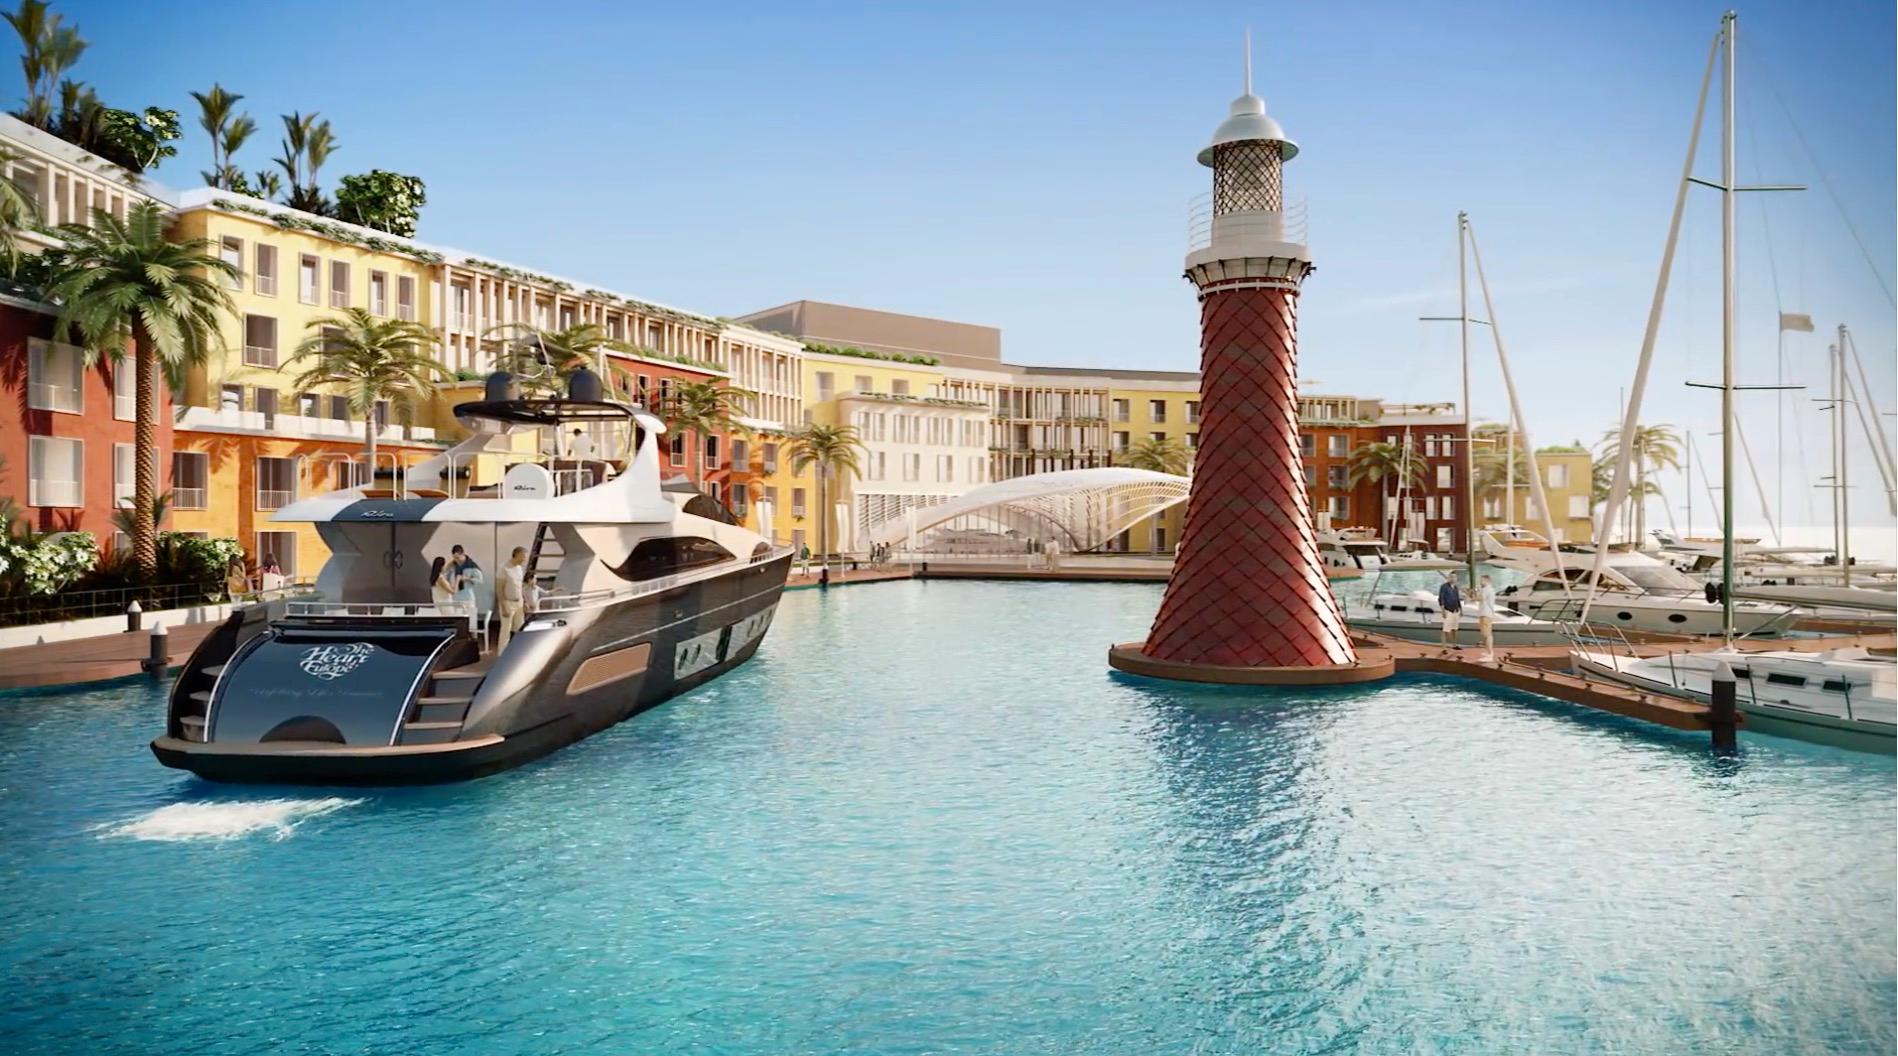 Här byggs ett Europa - i Dubai. En av öarna kommer att vara inspirerad av Venedig. 